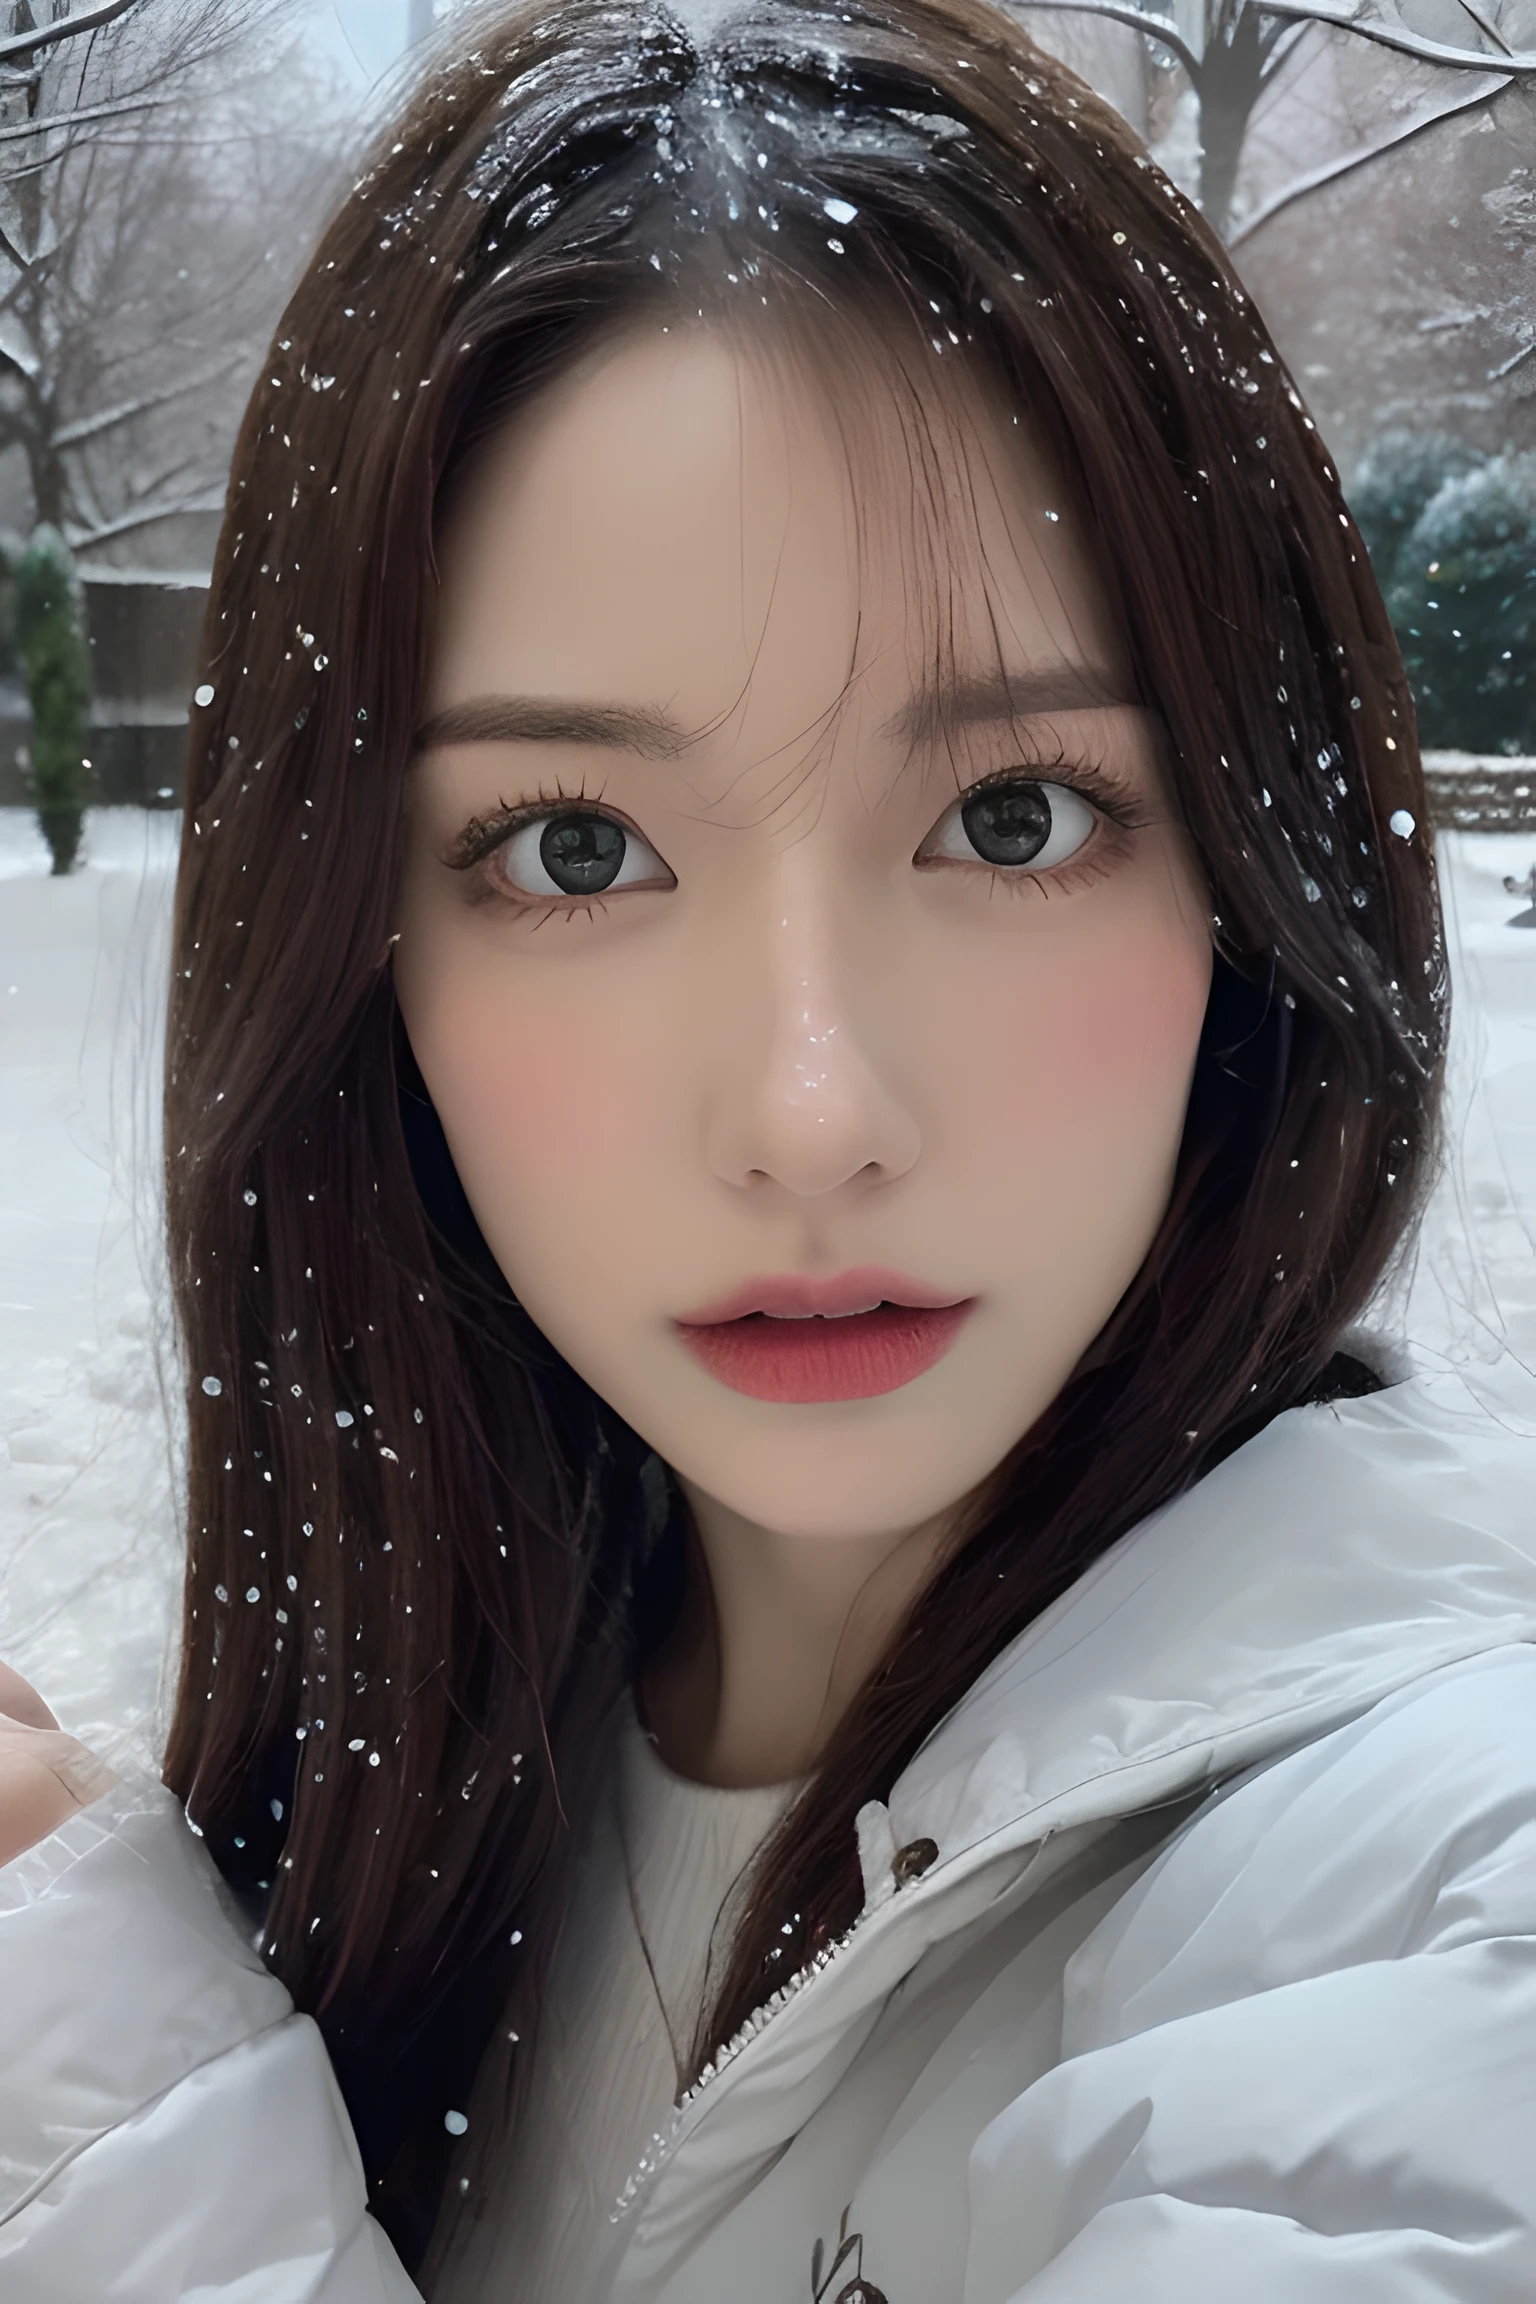 (8k, mejor calidad, Obra maestra, resolución ultra alta:1.2) Foto de una bonita mujer japonesa en el (estilo de paul rubens y rebecca guay:1.1) (melancólica nieve del invierno:1.4)